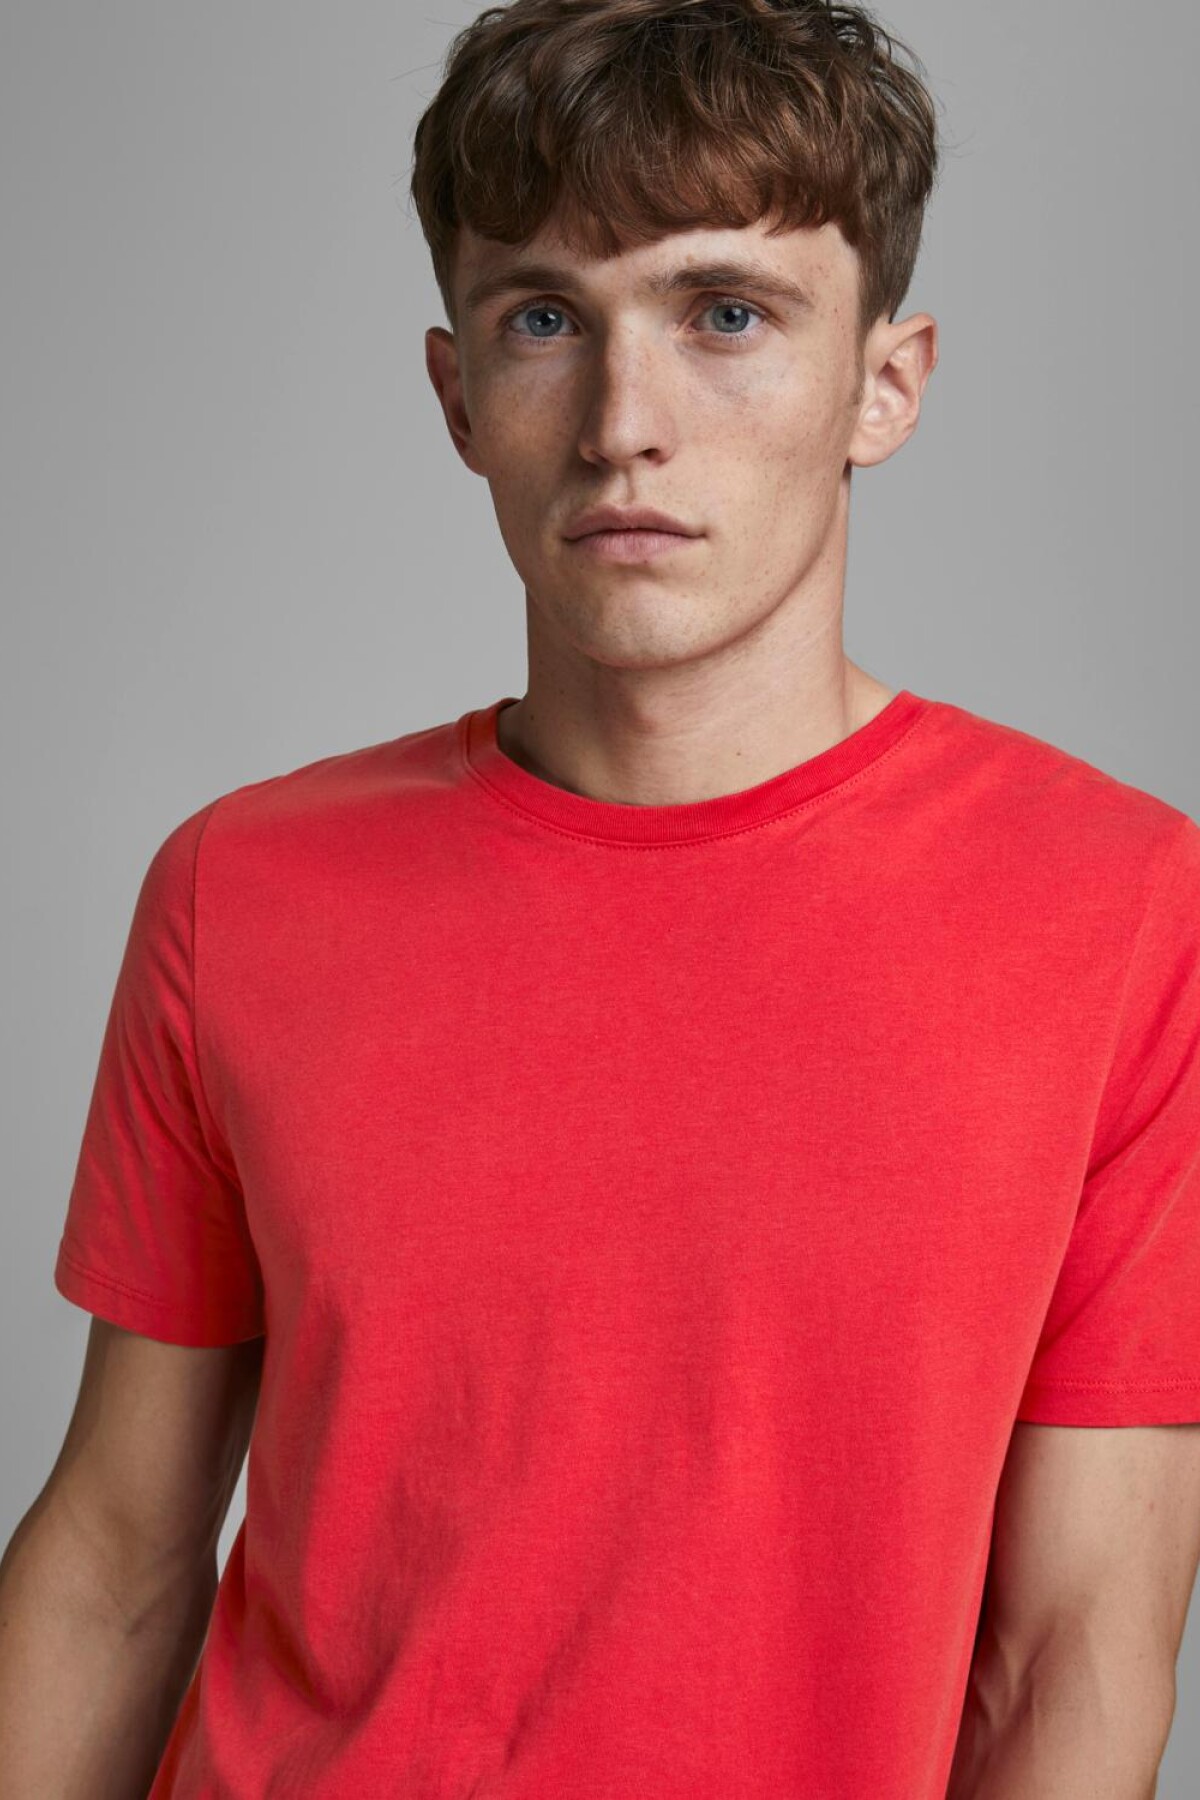 Camiseta Organic Básica True Red